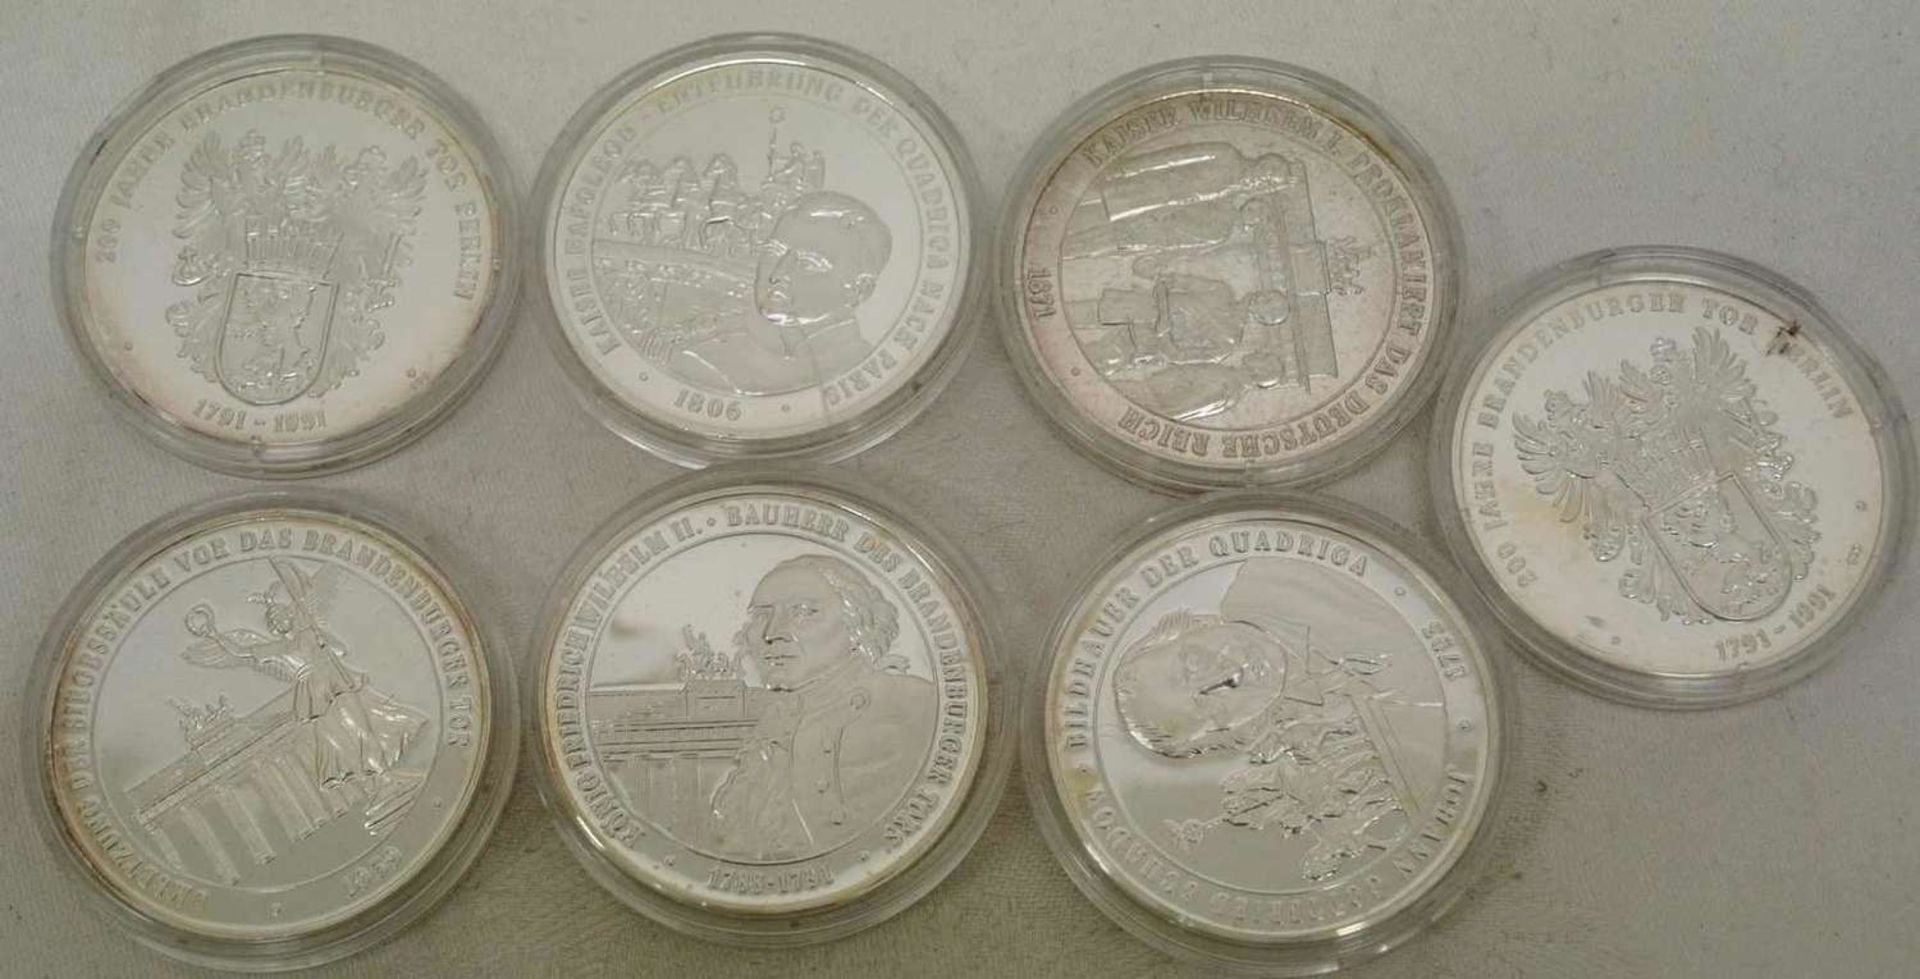 7 Silbermedaillen "200 Jahre Brandenburger Tor in Berlin", alle polierte Platte, 999er Silber.